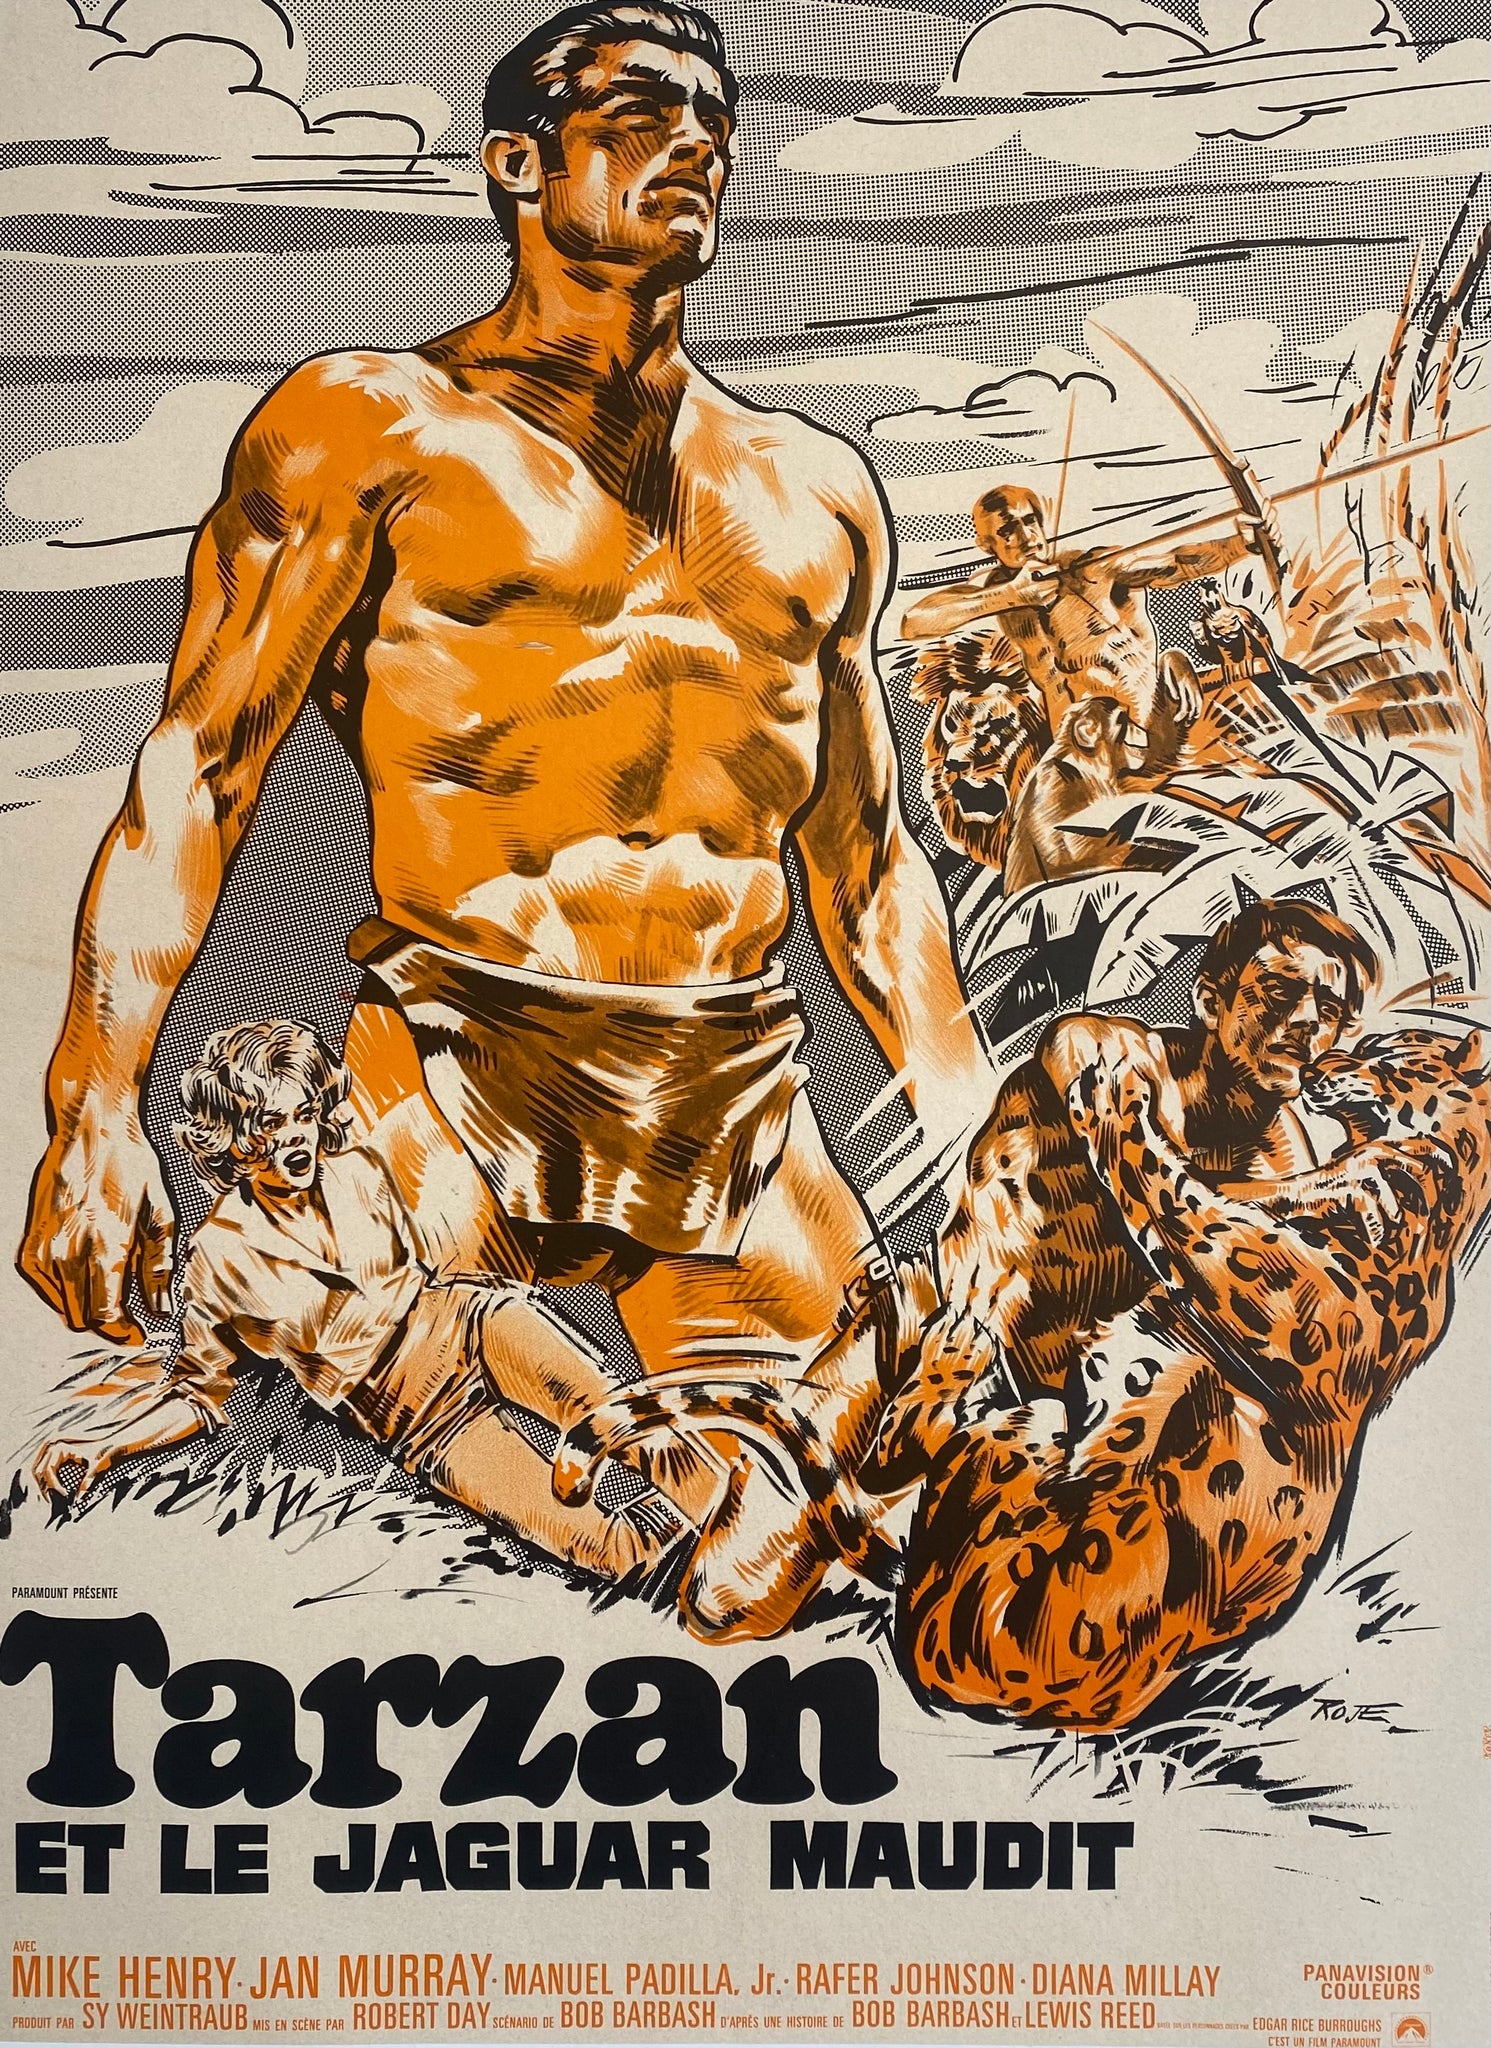 Affiche Cinéma Tarzan et le Jaguar Maudit de 1967.